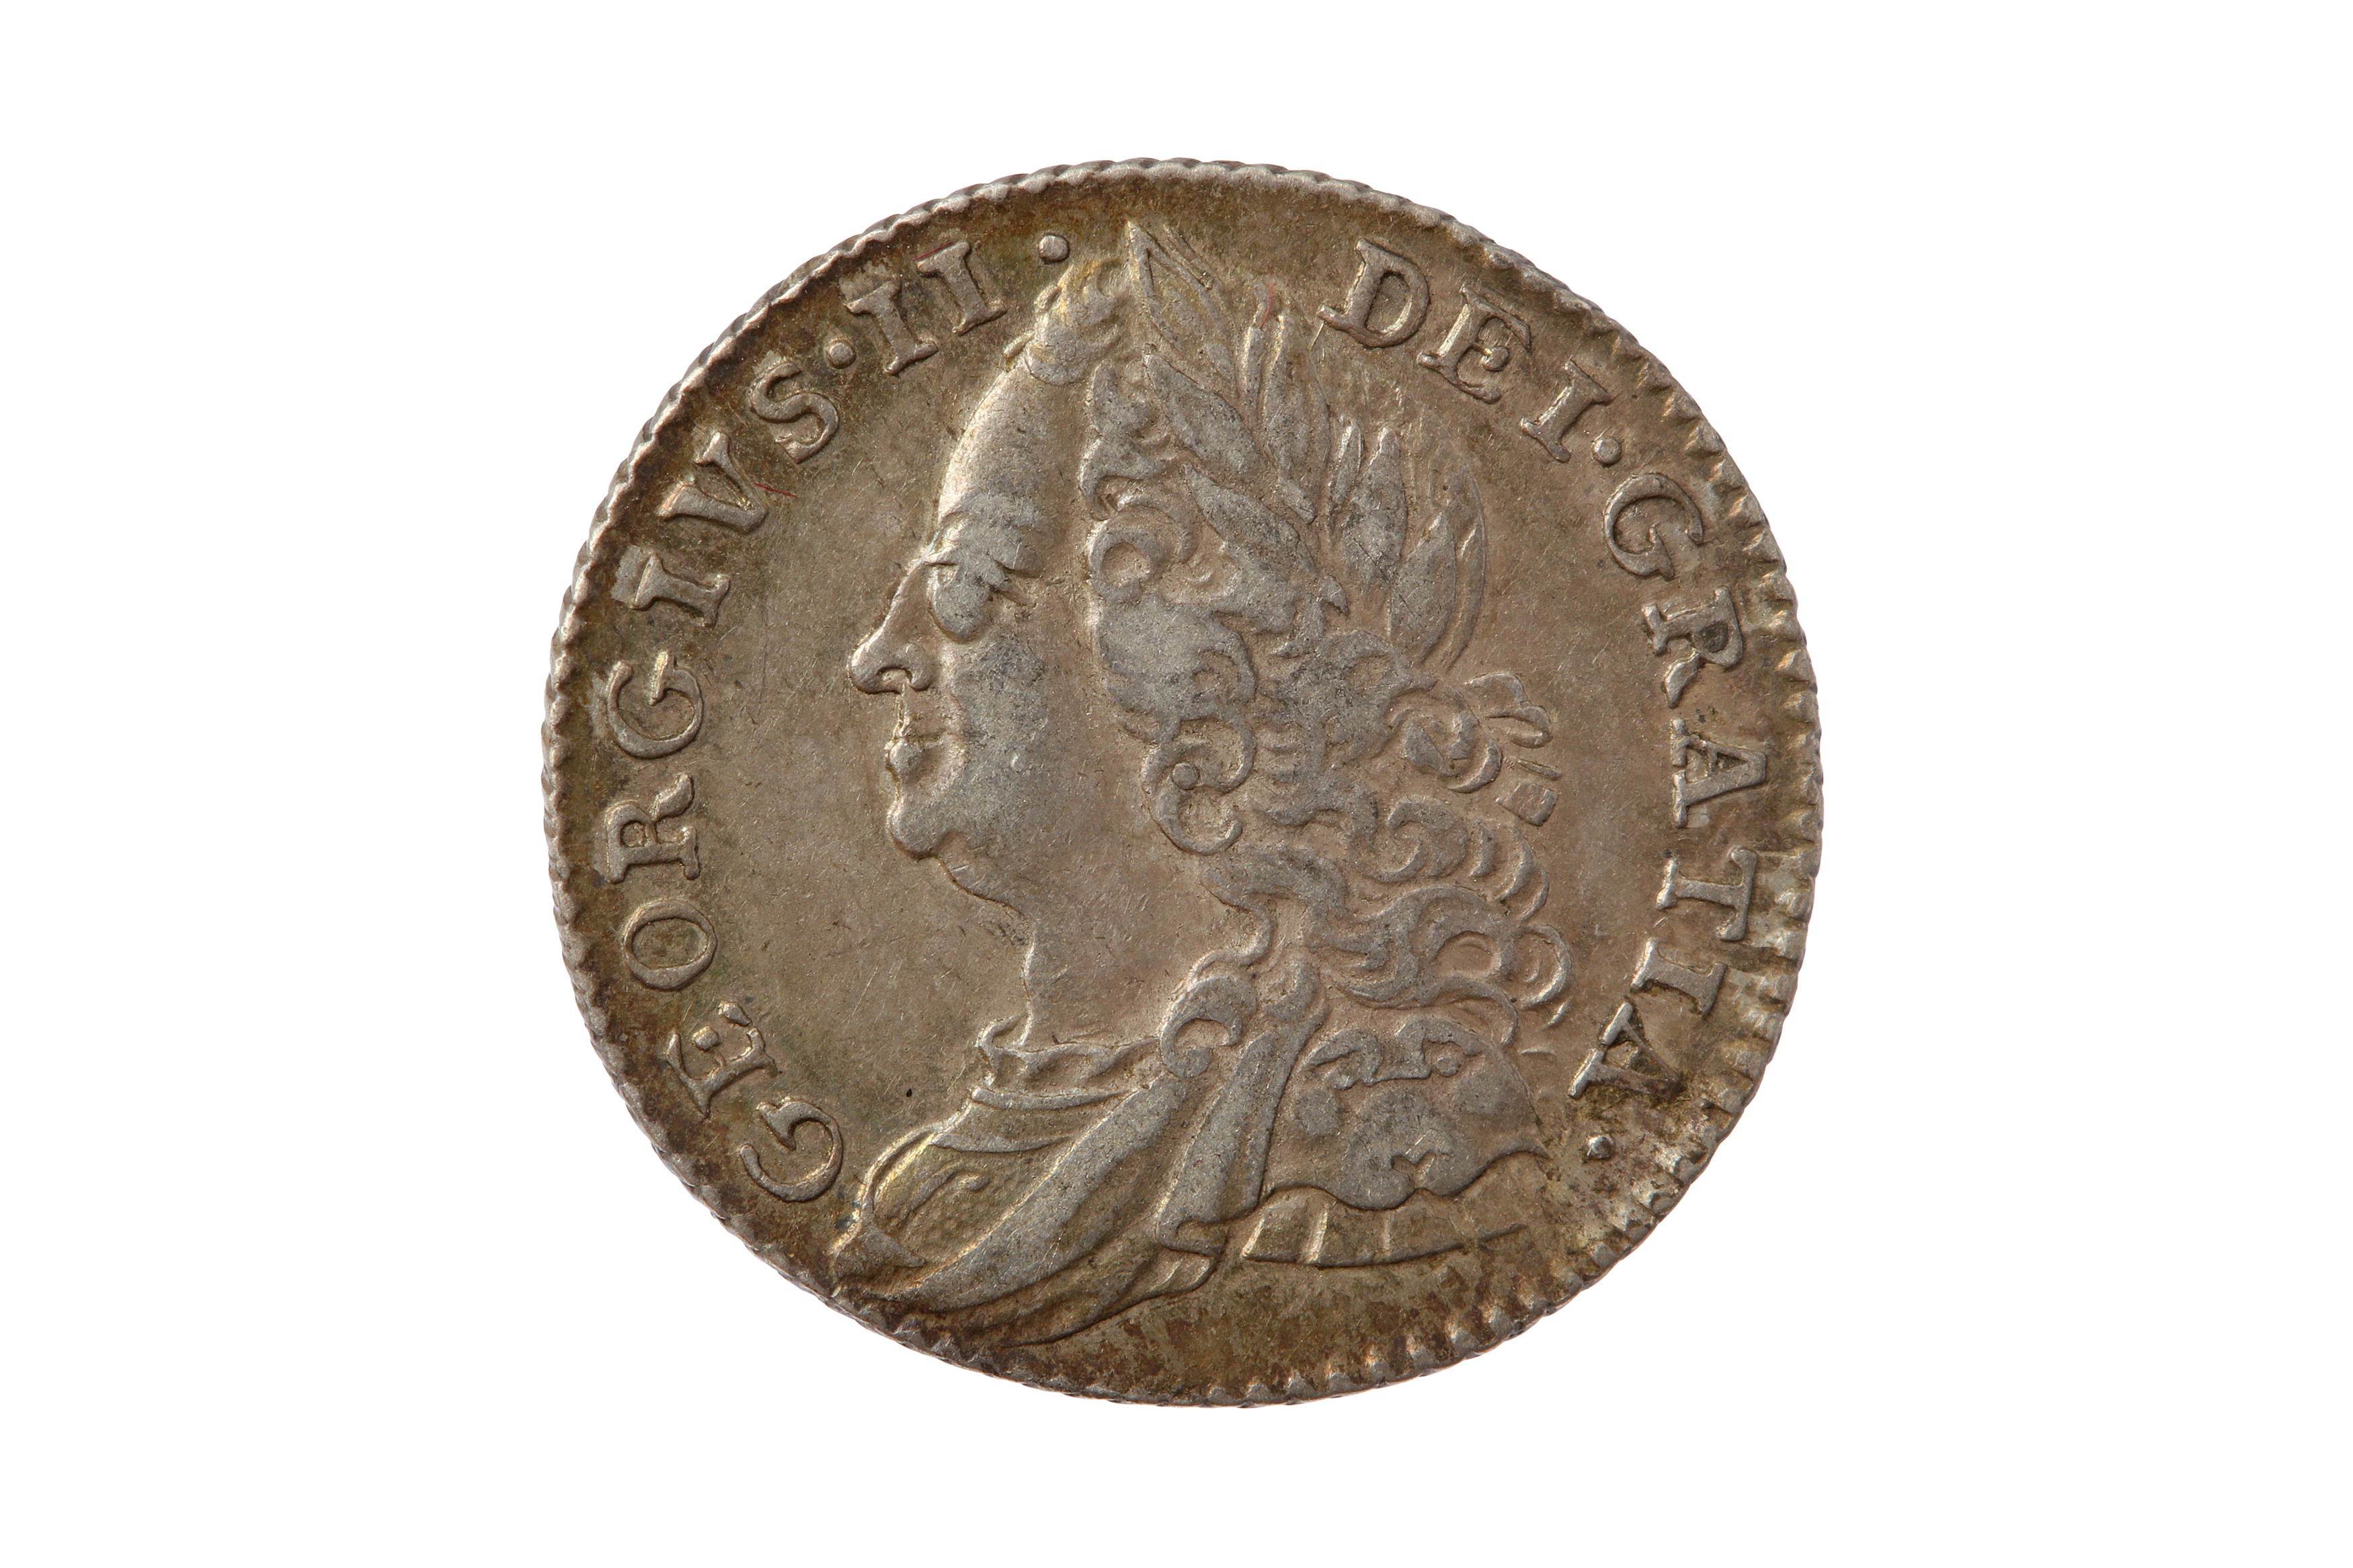 GEORGE II (1727 - 1760), 1758 SIXPENCE.